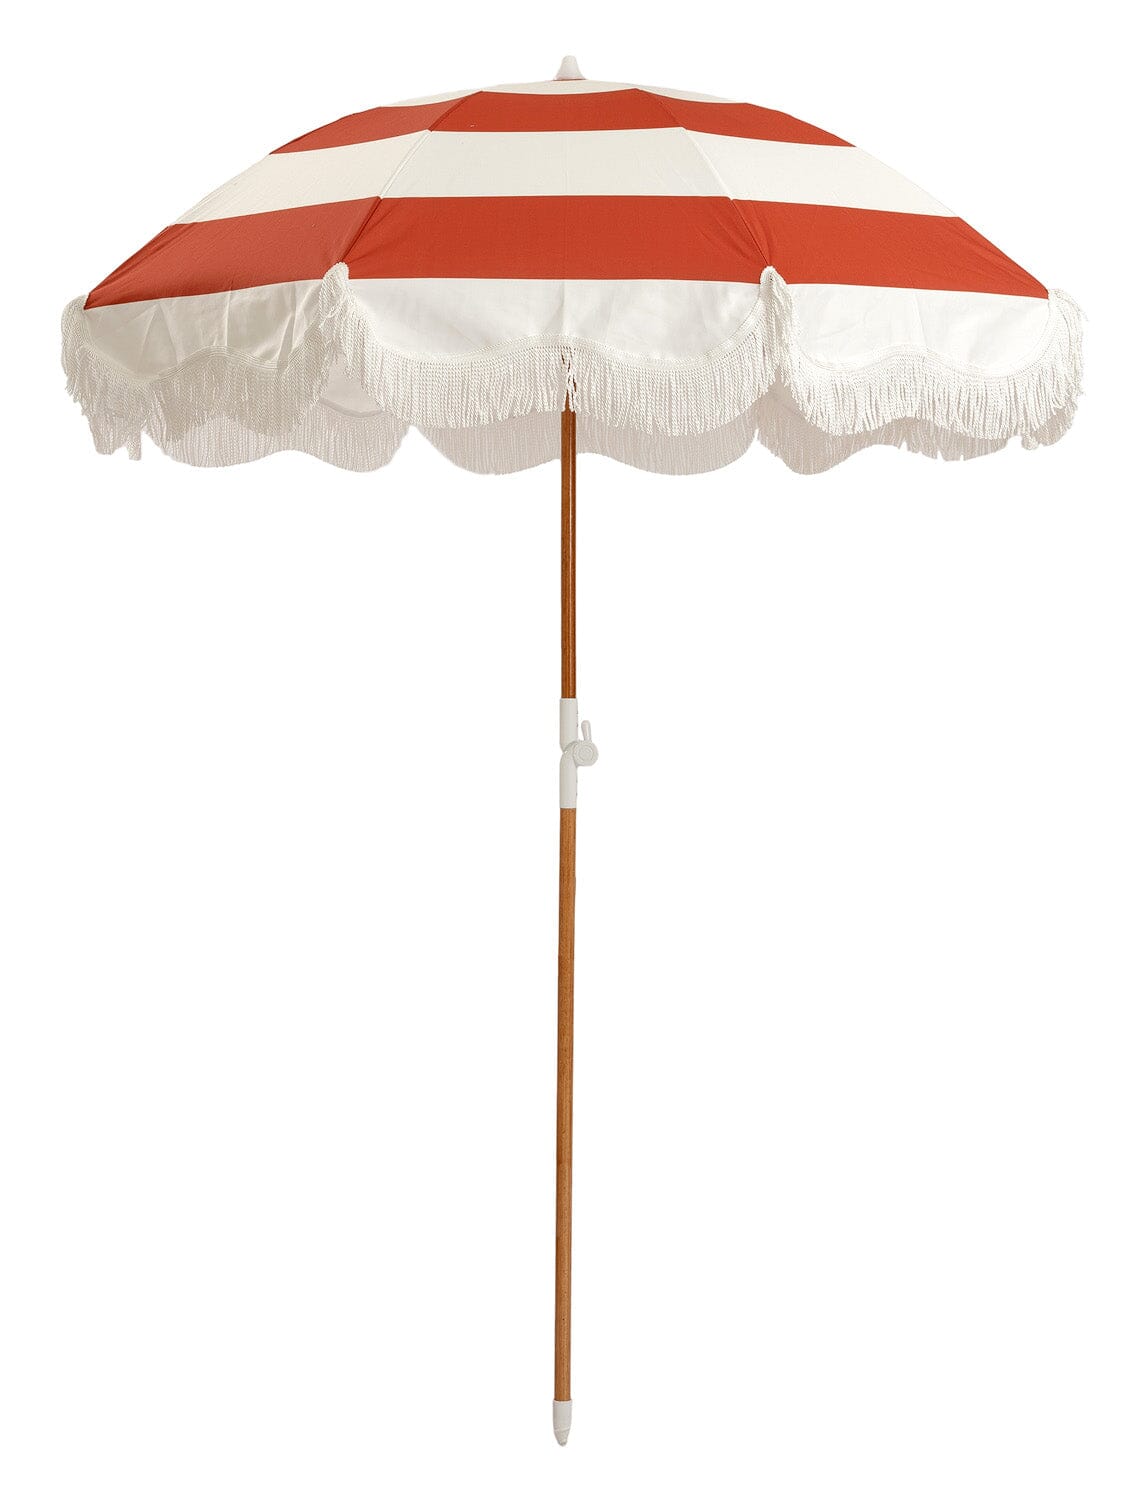 The Holiday Beach Umbrella - Le Sirenuse Capri Stripe